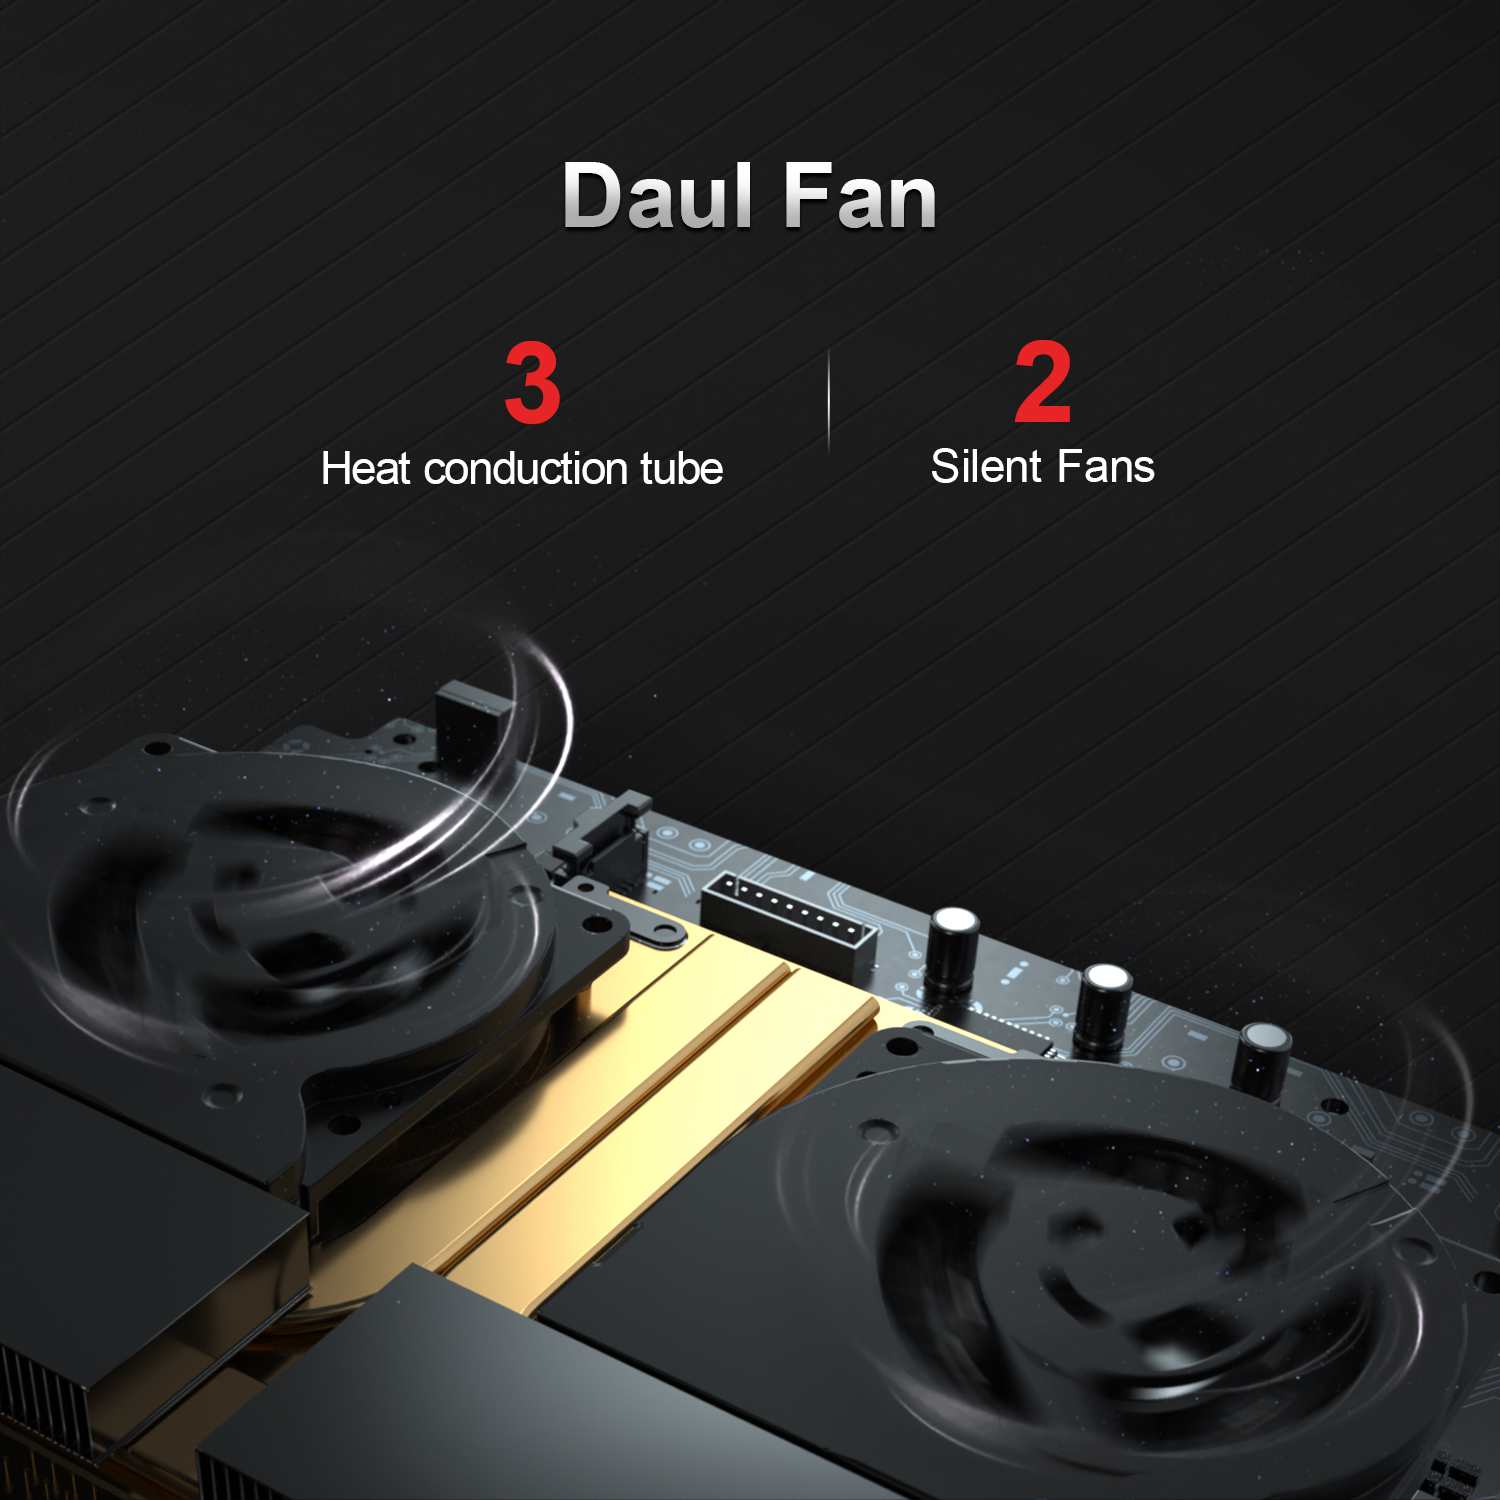 รูปภาพเพิ่มเติมเกี่ยวกับ [เปิดใช้งานล่วงหน้า Win11 Pro]Mini PC มินิพีซี GT-R AMD Ryzen 5 3550H 16GB 512GB SSD WiFi 6 Quad-Core 8เธรดรองรับ 2.4G/5G บลูทูธ WiFi คู่4.0เซนเซอร์พิมพ์ลายนิ้วมือ Dual Fan Cooling De